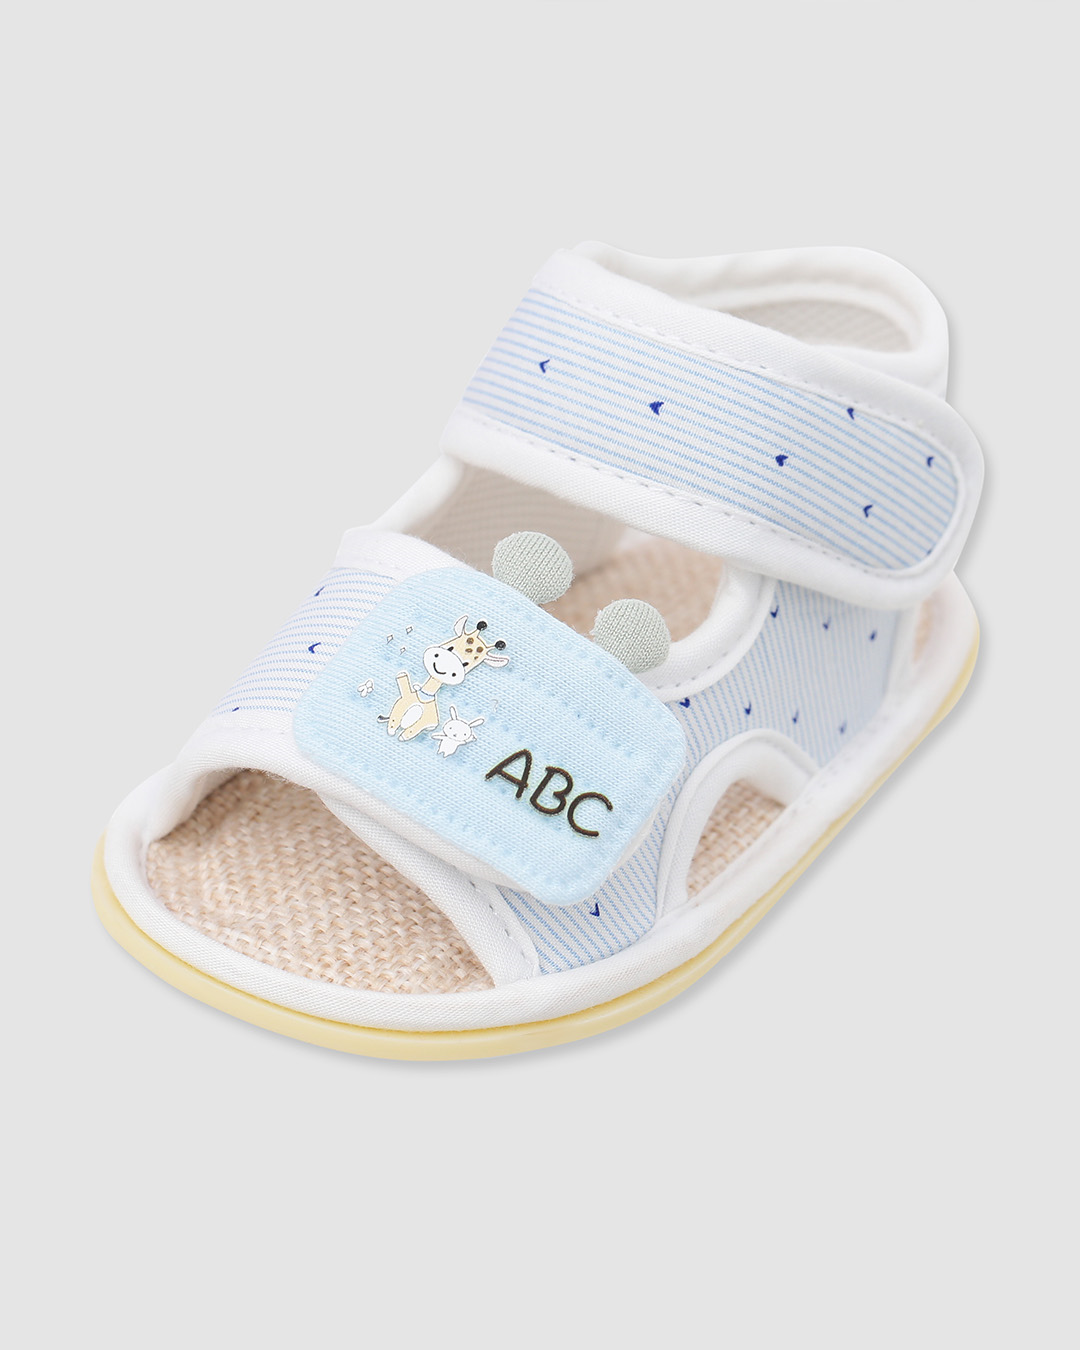 Giày tập đi Á Châu AC526 in chữ ABC màu xanh dương